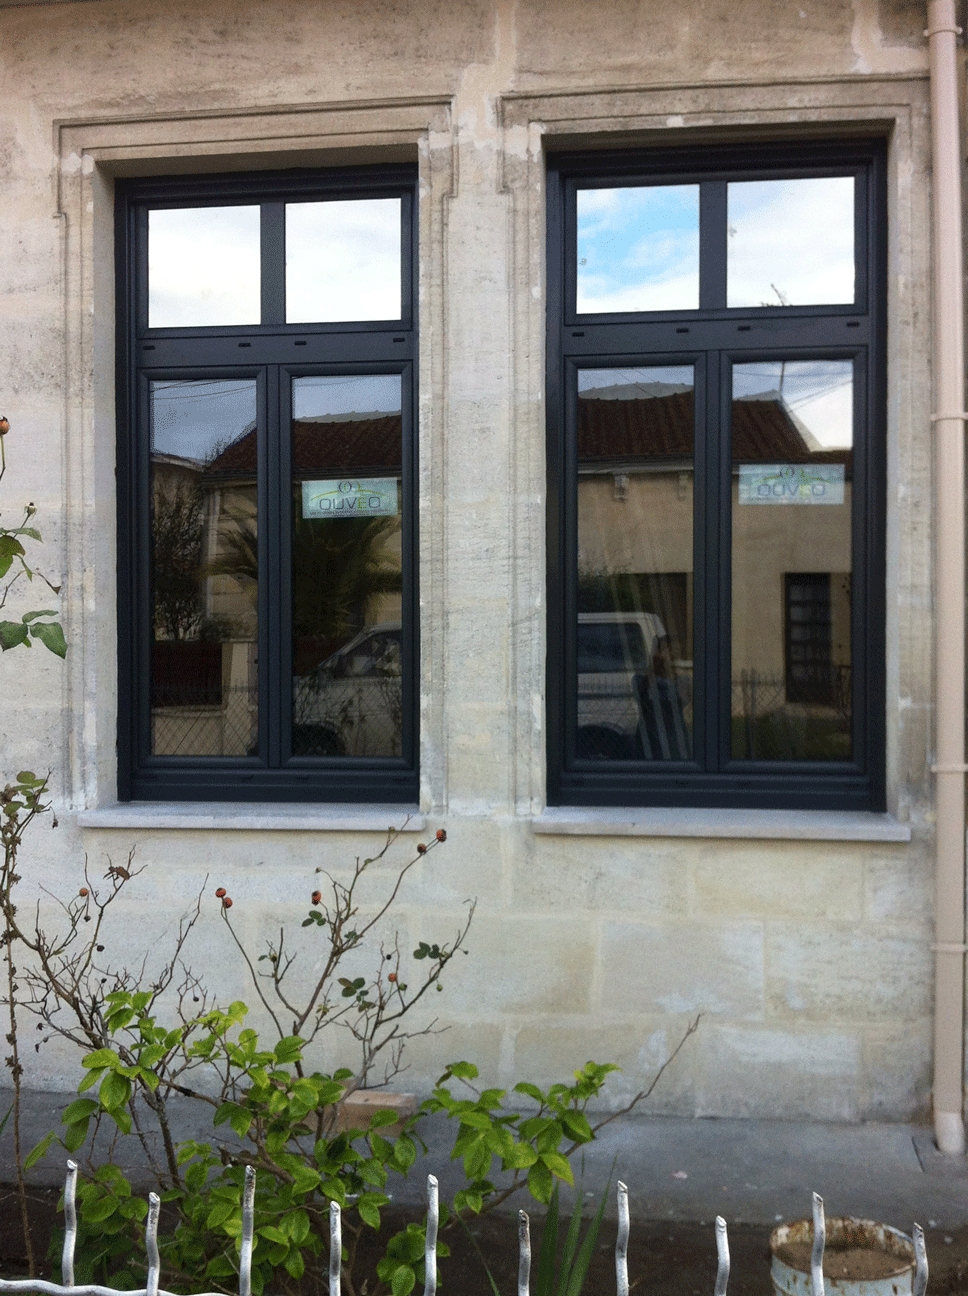 Menuiseries aluminium gris anthracite sur facade pierre de taille